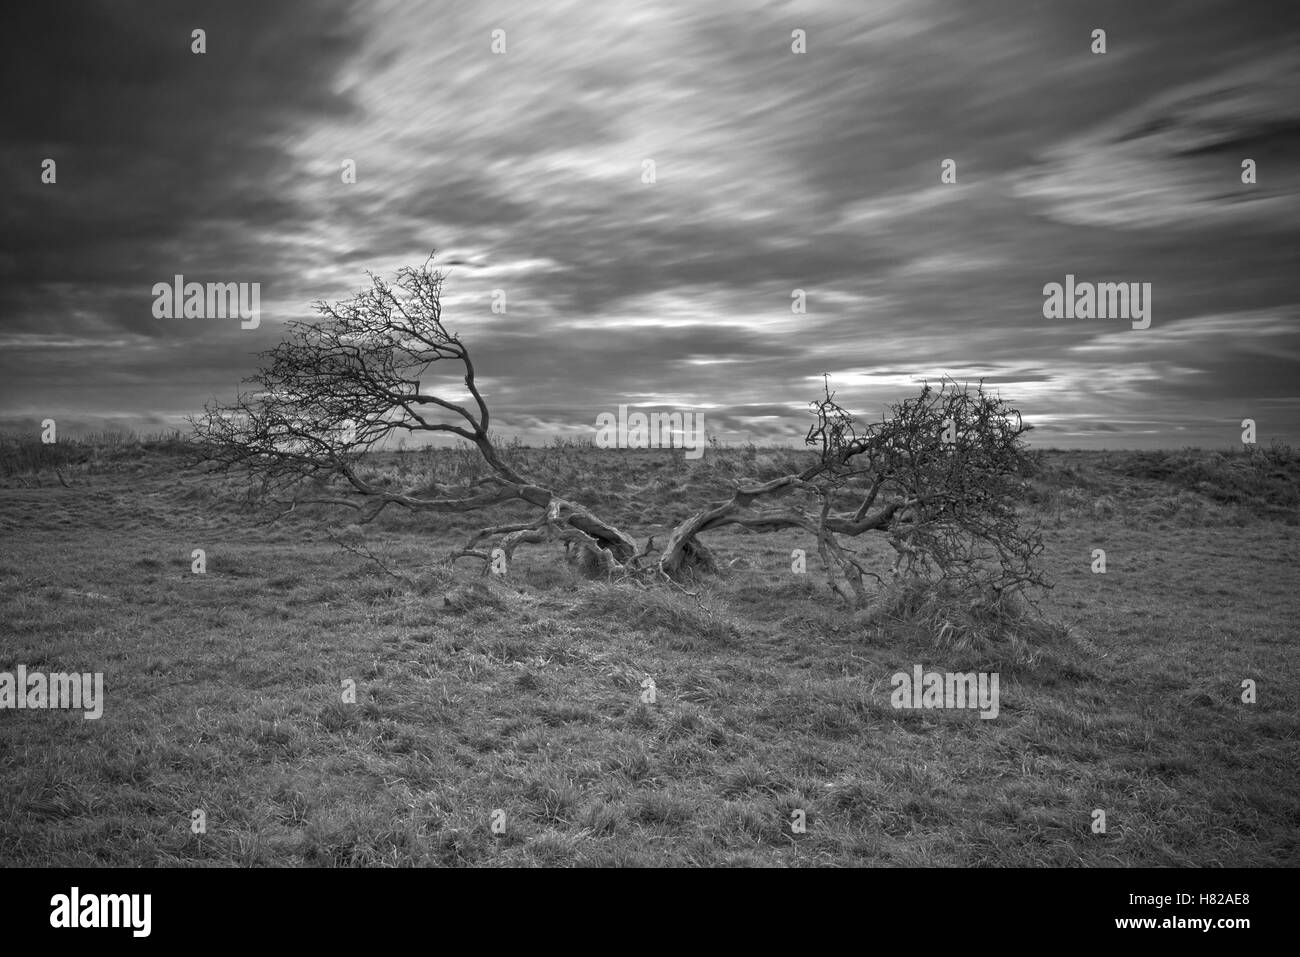 Un arbre isolé avec les racines exposées se dresse sur le Devils's Dyke, Parc National des South Downs, Brighton, West Sussex, Angleterre, Royaume-Uni, Banque D'Images